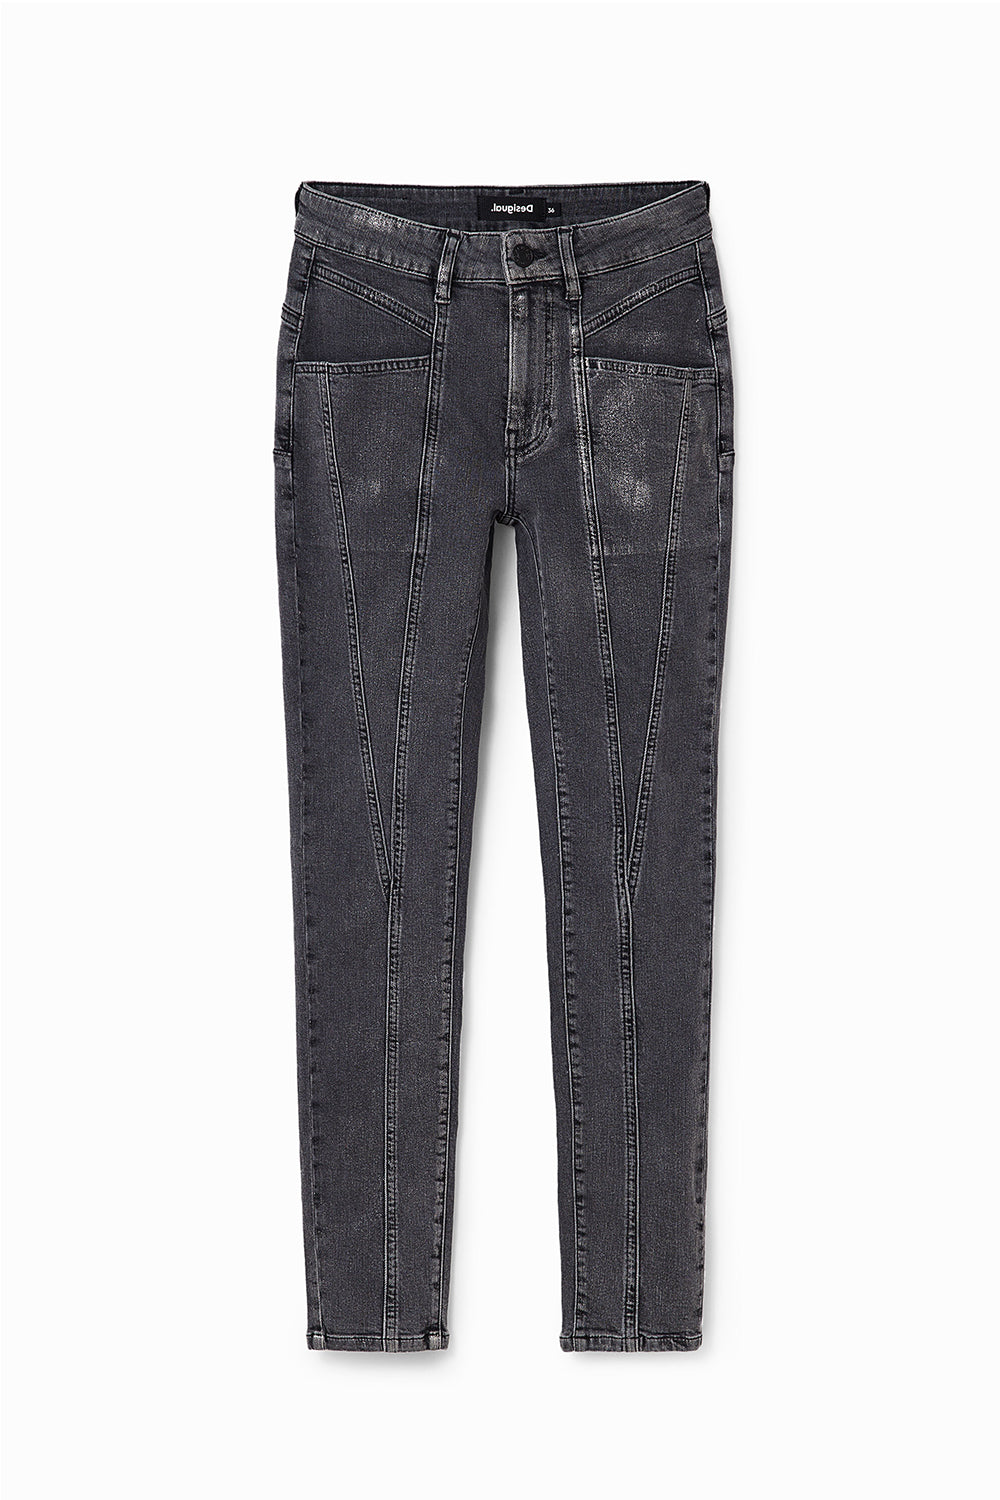 Desigual Metallic Pushup Skinny Jeans Nero